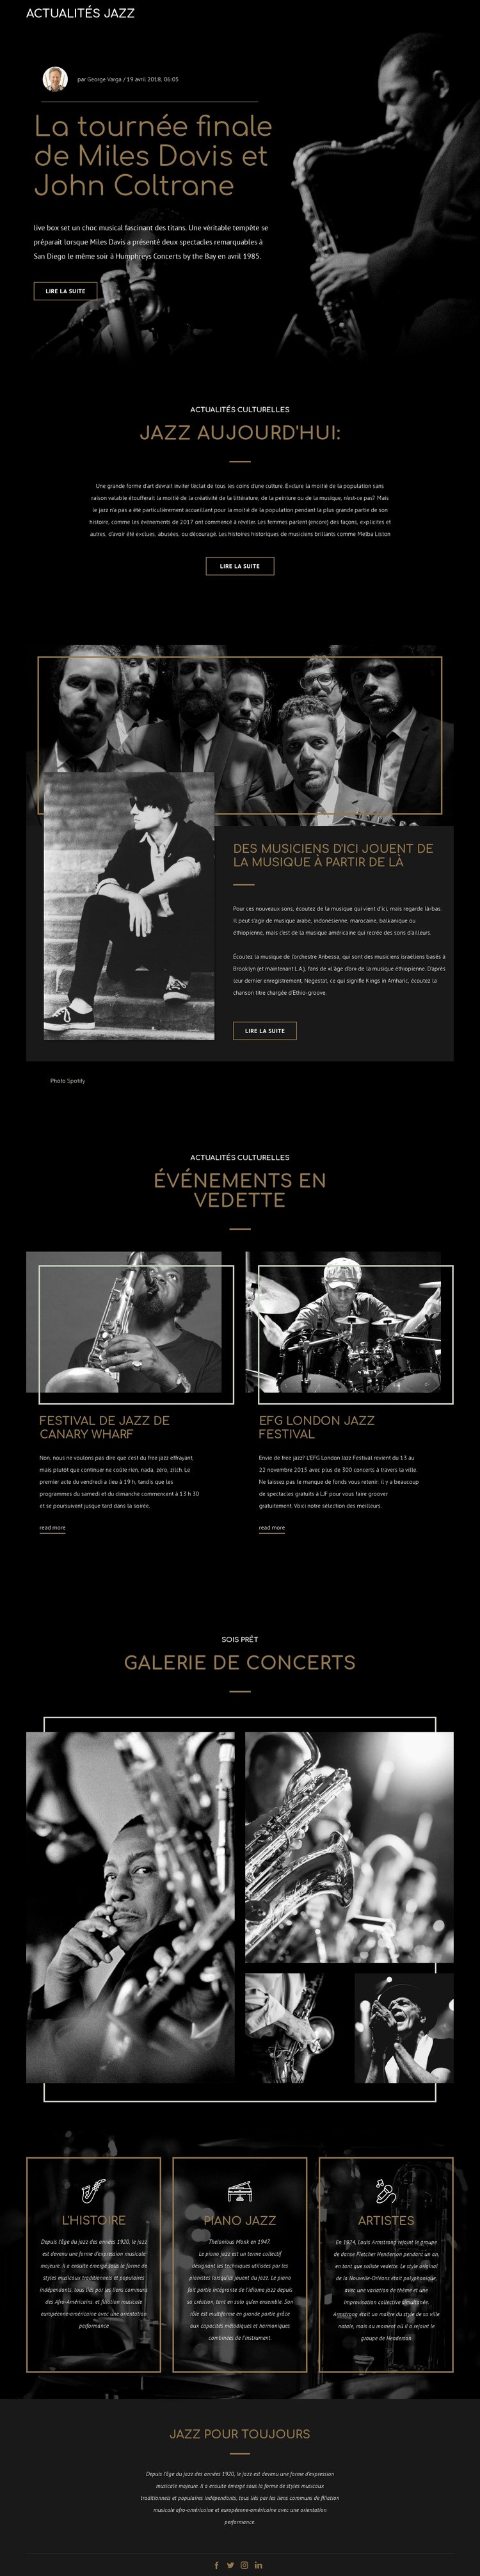 Legengs de la musique jazz Conception de site Web